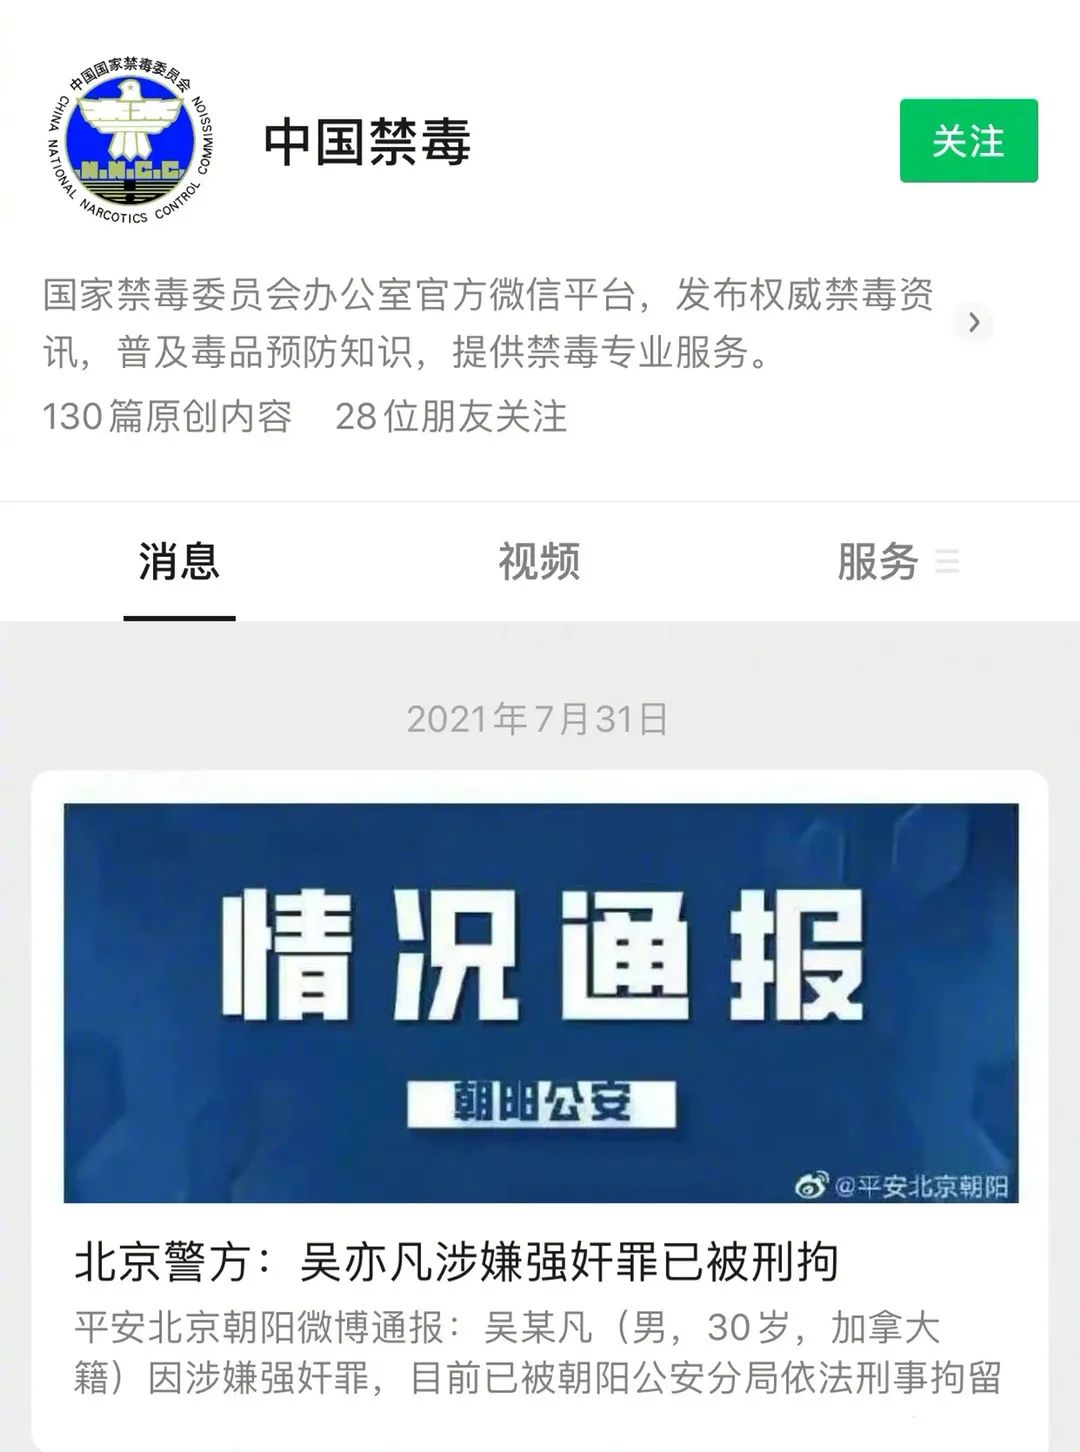 吴亦凡被刑拘 多家公司踩雷 “腾讯系”最受伤？